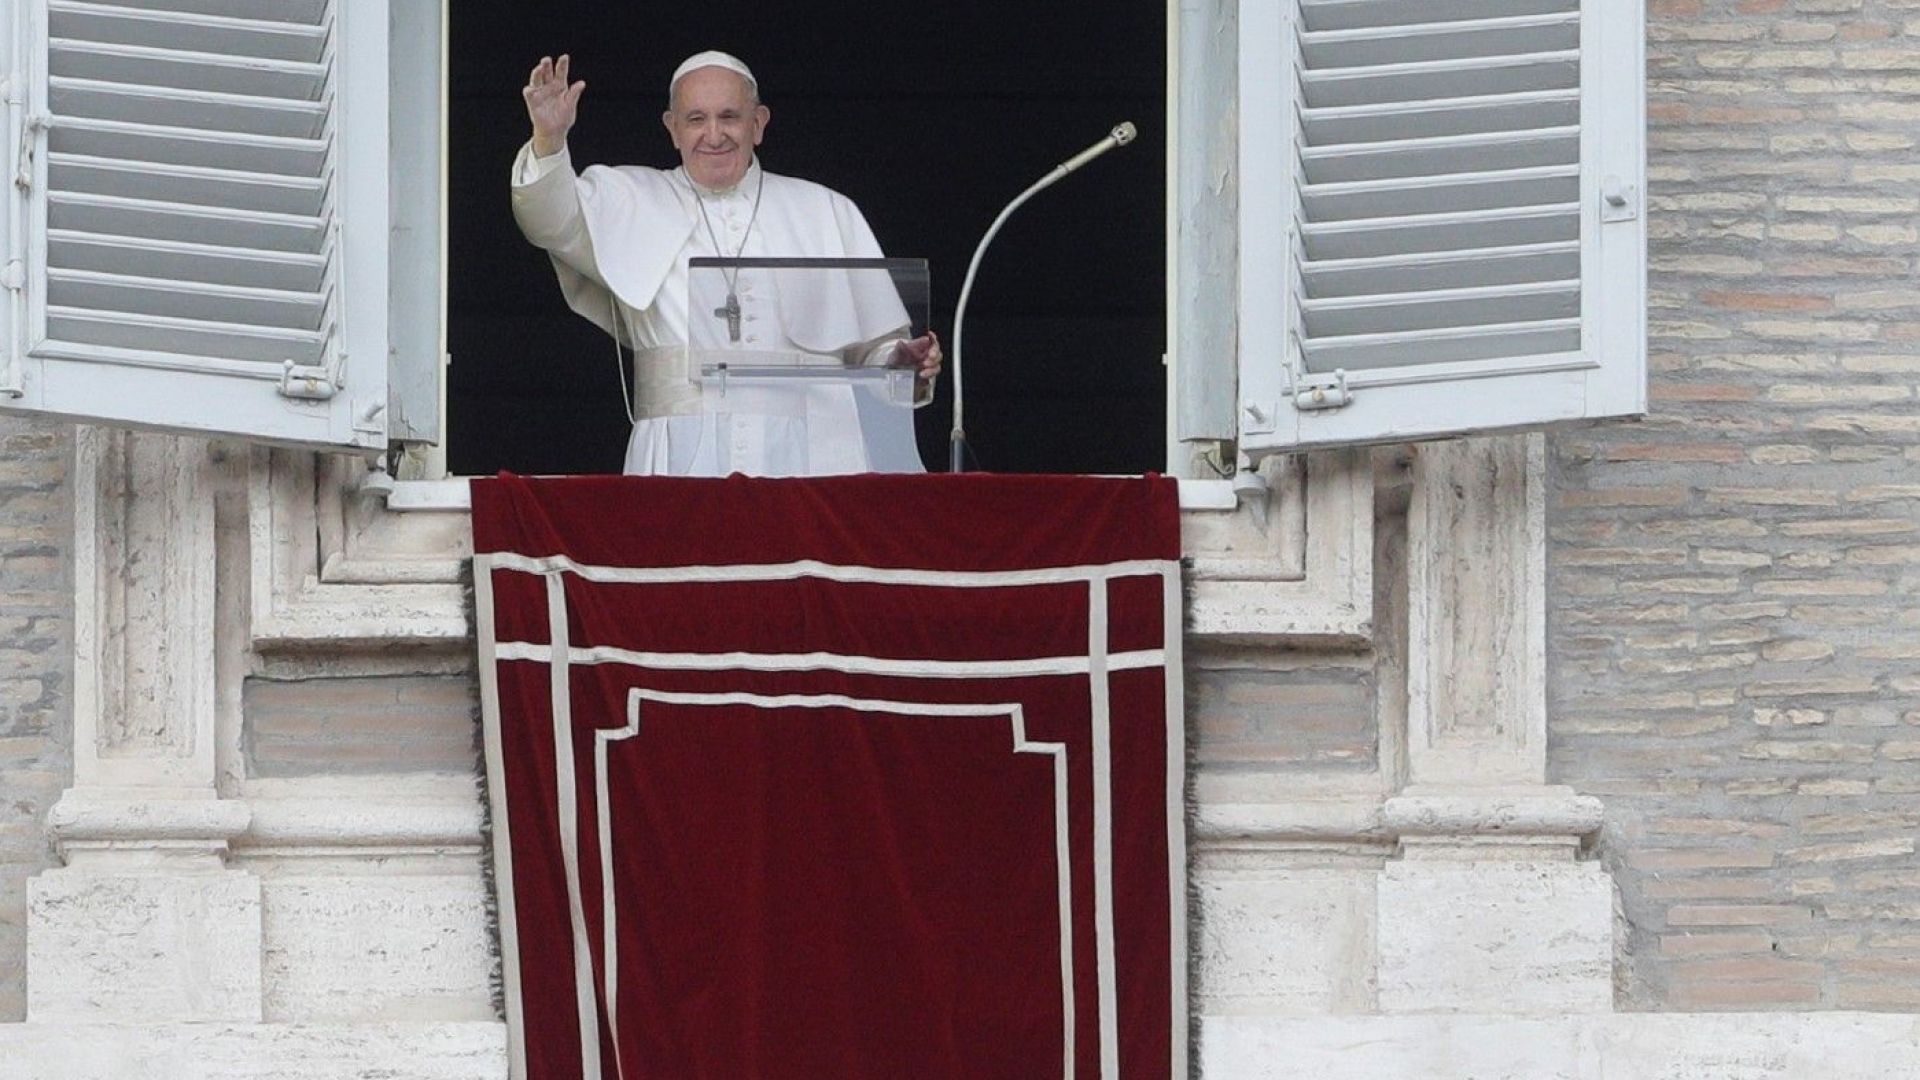 Трябват бързи и решителни действия, за да не умират повече мигранти в морето, каза папата